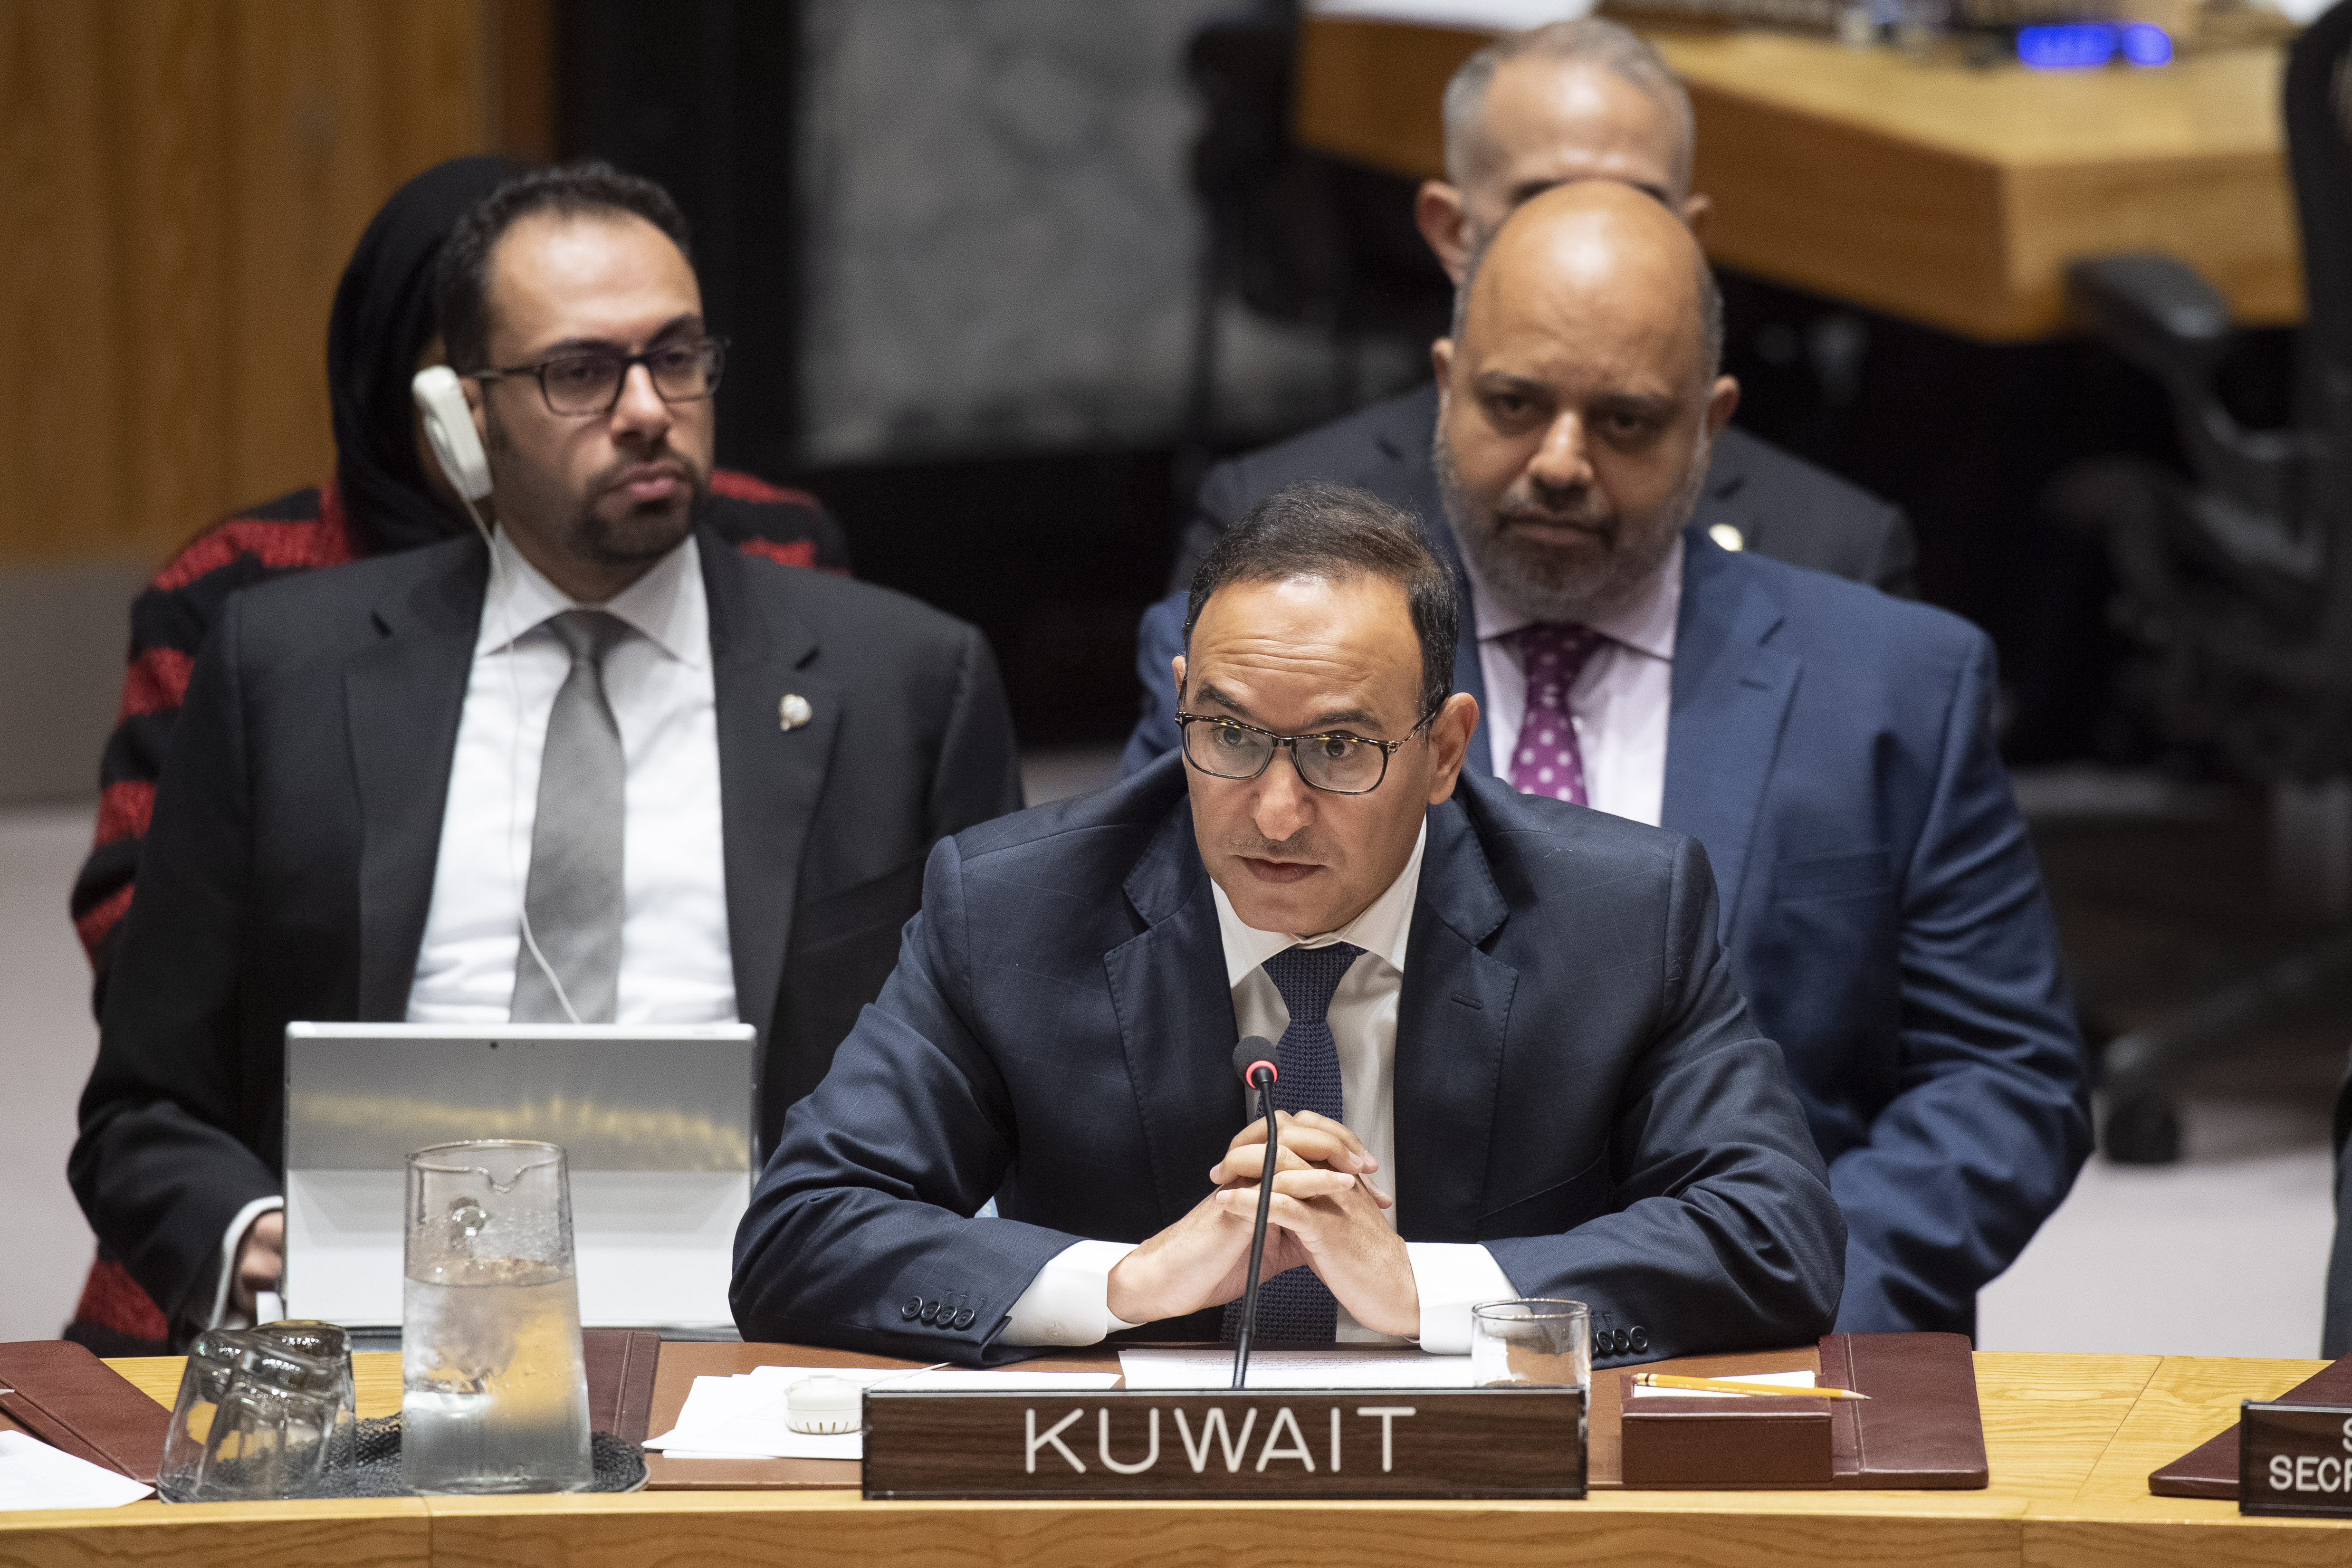 كلمة الكويت في جلسة مجلس الأمن حول المسار السياسي في سوريا والتي ألقاها مندوب دولة الكويت الدائم لدى الأمم المتحدة السفير منصور العتيبي